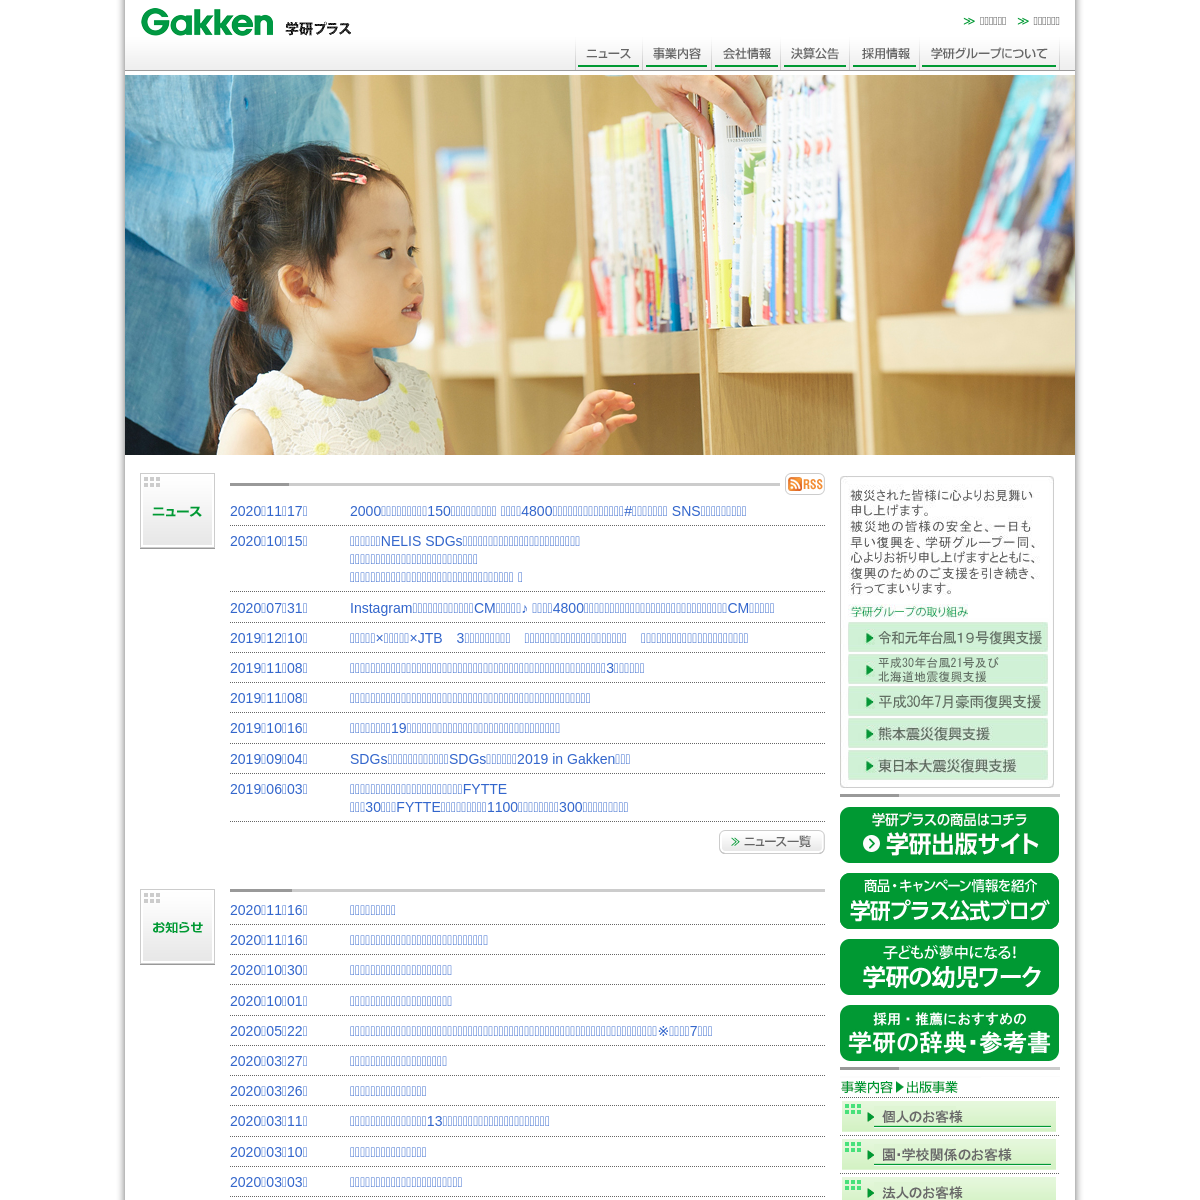 A complete backup of gakken-plus.co.jp